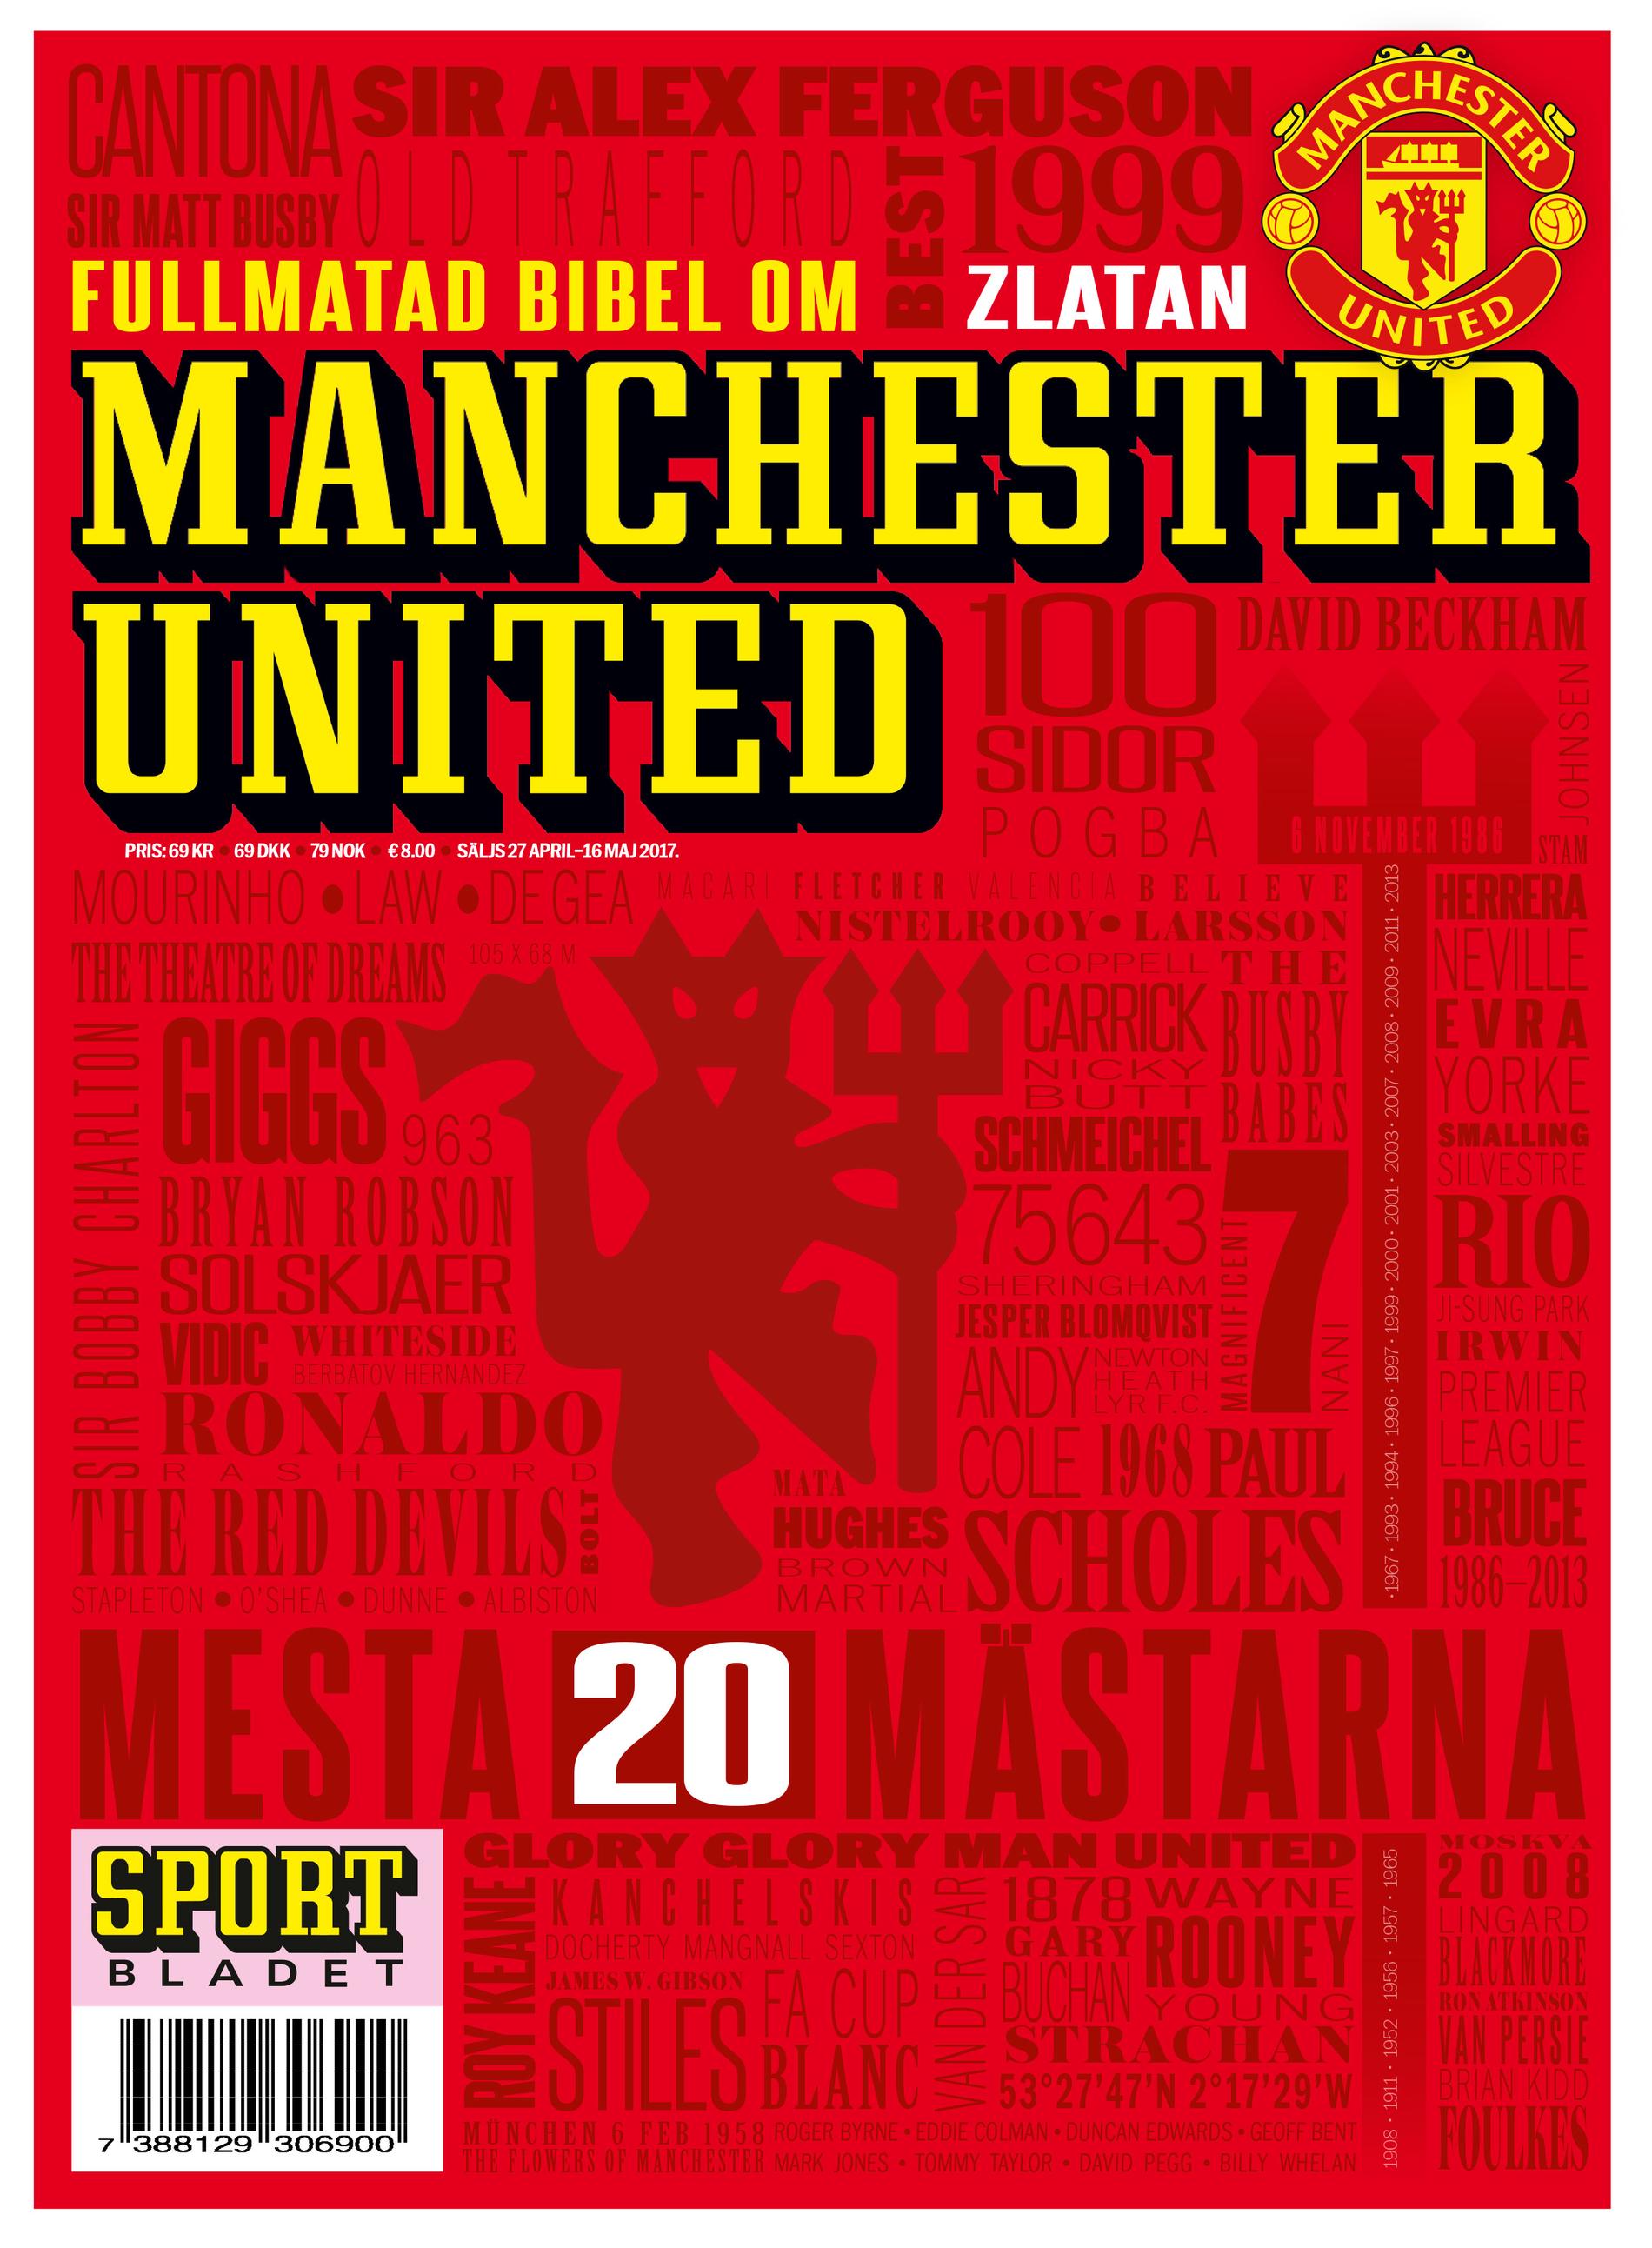 Förstasidan till Manchester United-bibeln. 